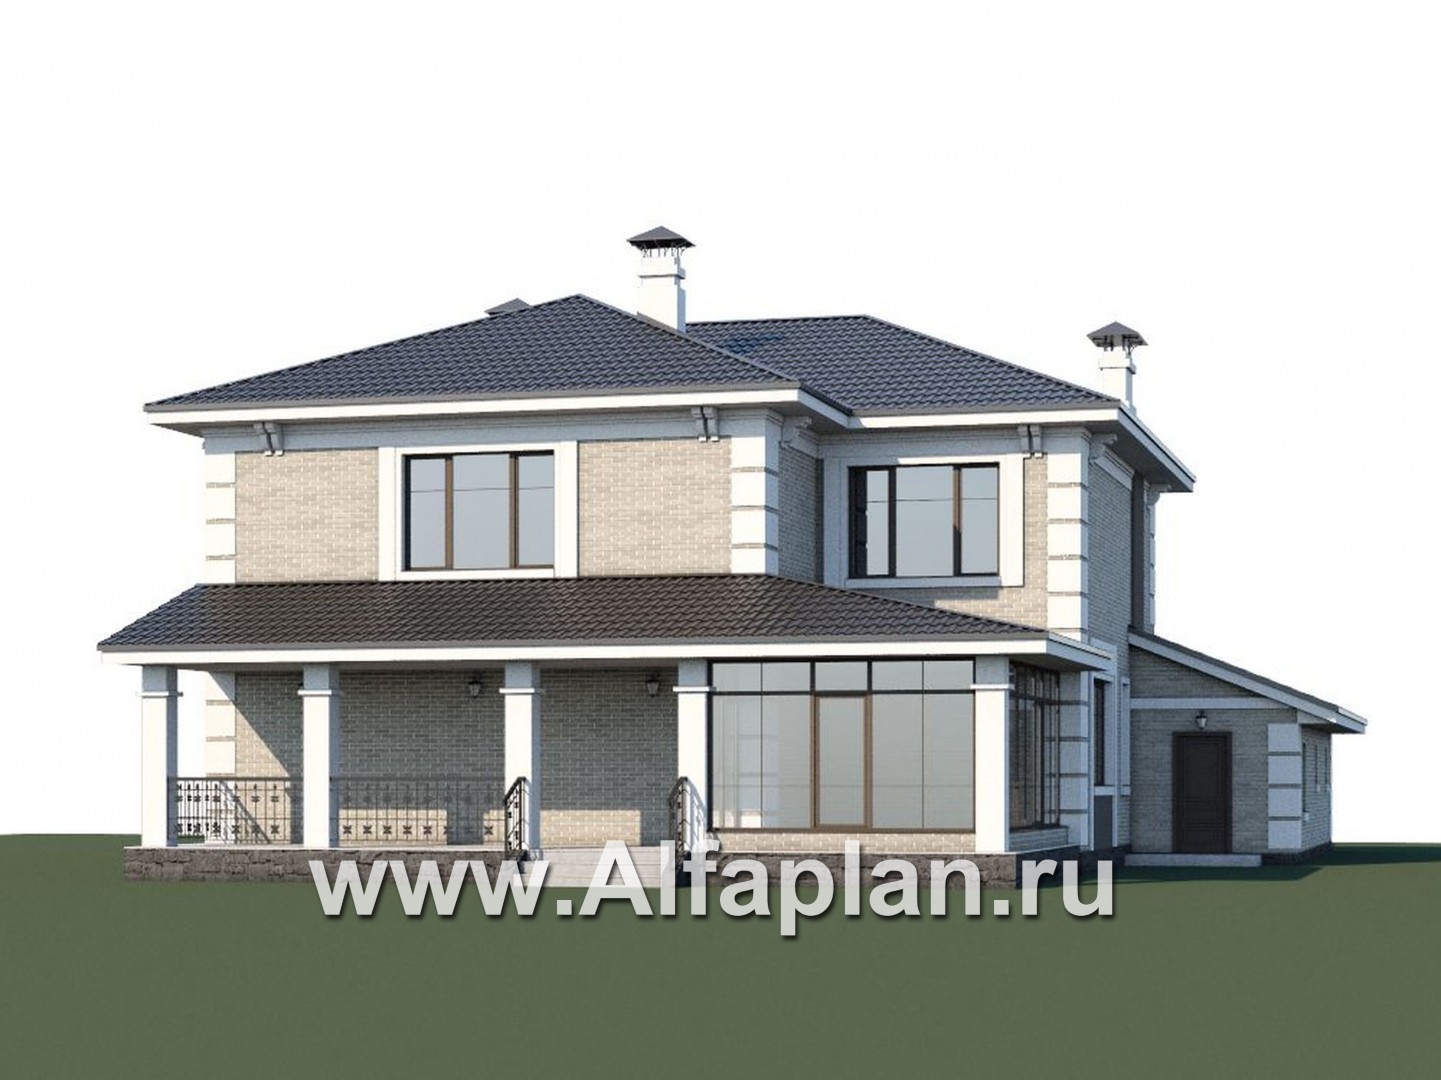 «Орлов» - проект двухэтажного дома из газобетона, с террасой и балконом, планировка с лестницей в центре, с гаражом на 2 авто - дизайн дома №1